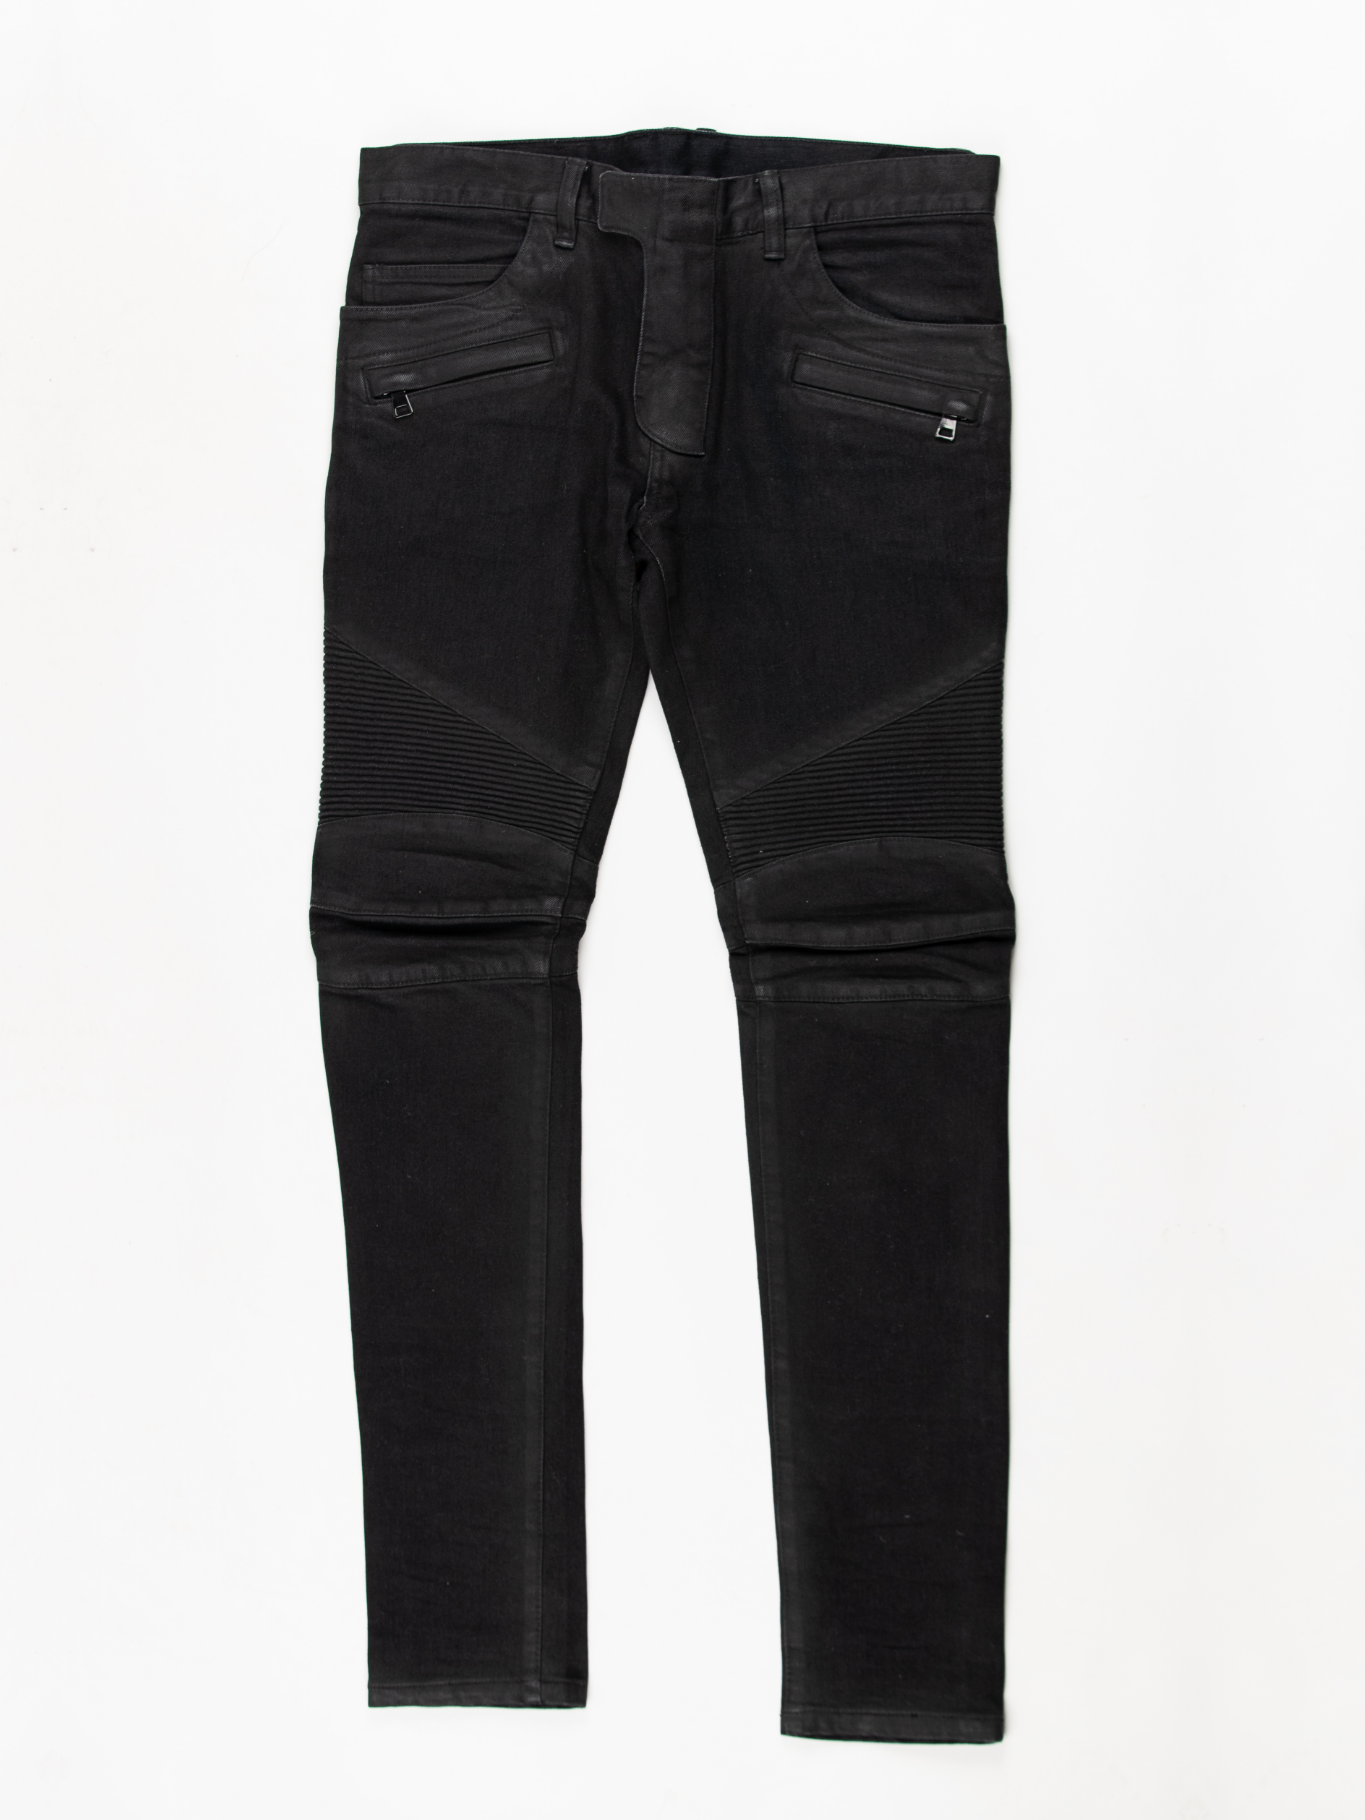 Black Waxed Biker Jeans